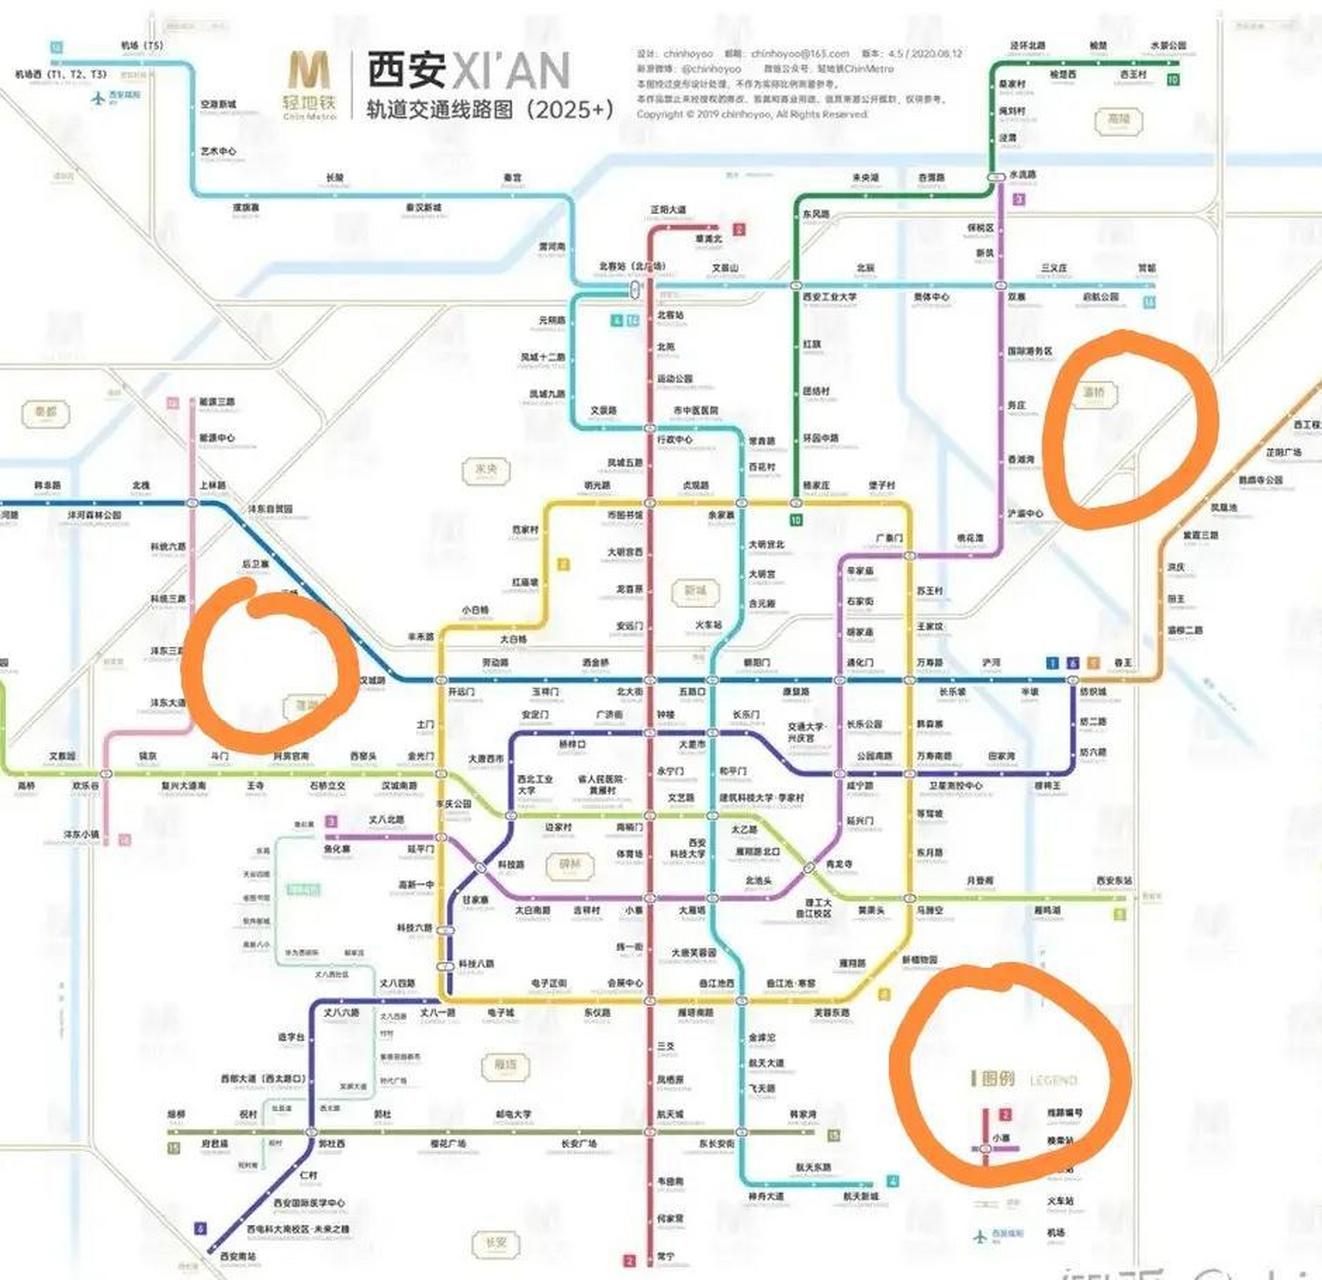 西安2027地铁图图片